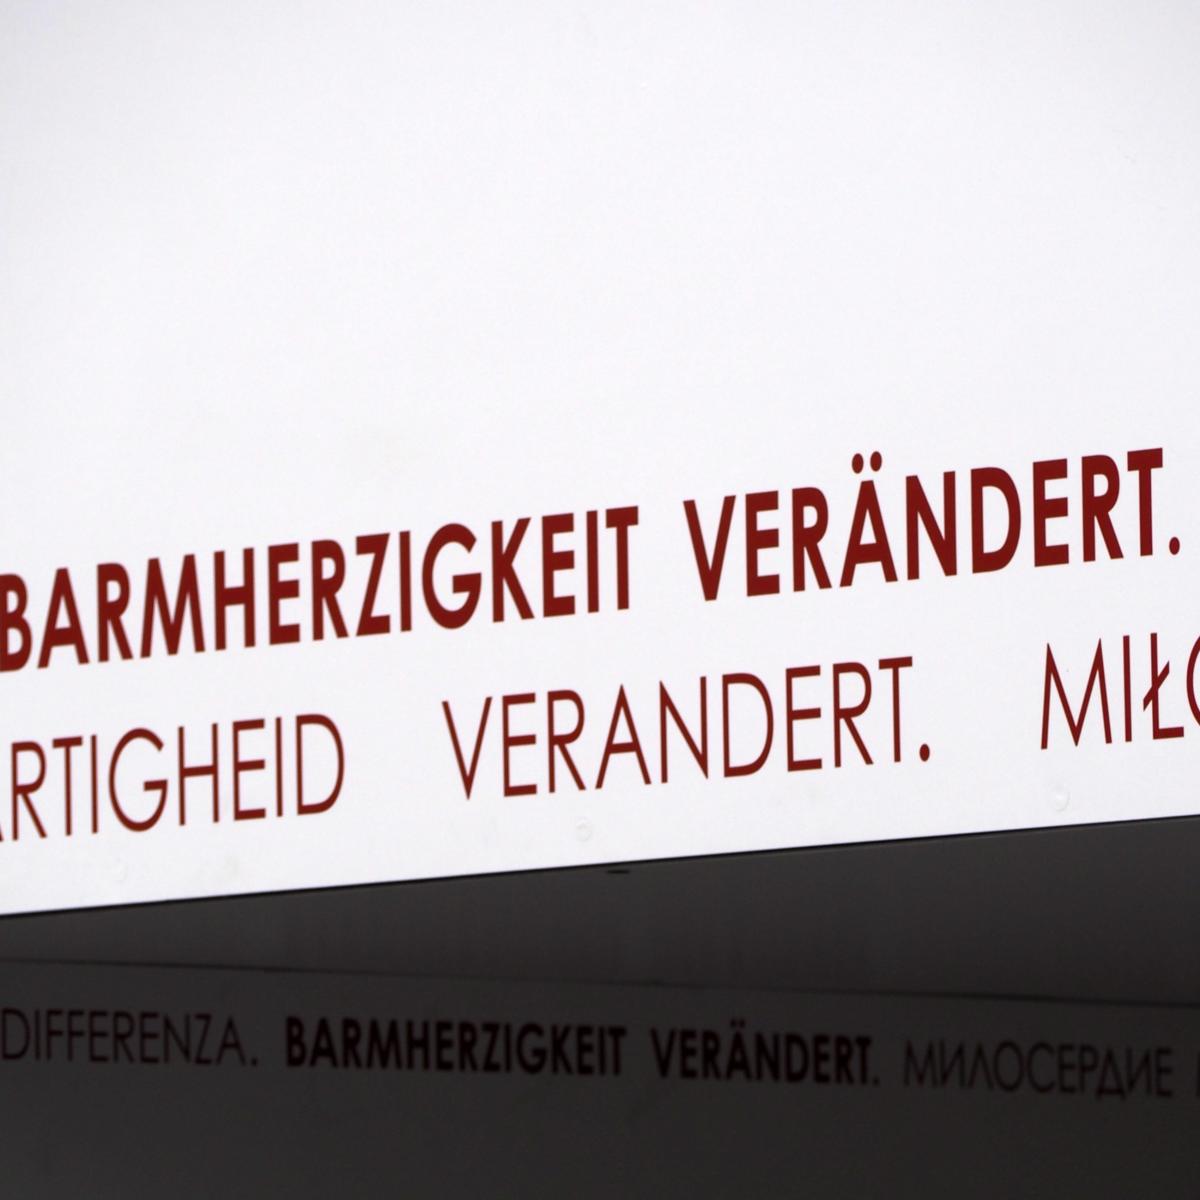 Das Tor der Barmherzigkeit ist Teil der Fasten- und Osterzeit 2016 am Bonner Münster, die unter dem Motto „Barmherzigkeit verändert“ steht.  Dieses Motto ist an den Torseiten und im Innenbereich des Tors umlaufend in elf verschiedenen Sprachen angebracht.  Es begleitet die Menschen, während sie das Tor durchschreiten.  Barmherzigkeit verändert Ex-Bild-DB-ID: 18608